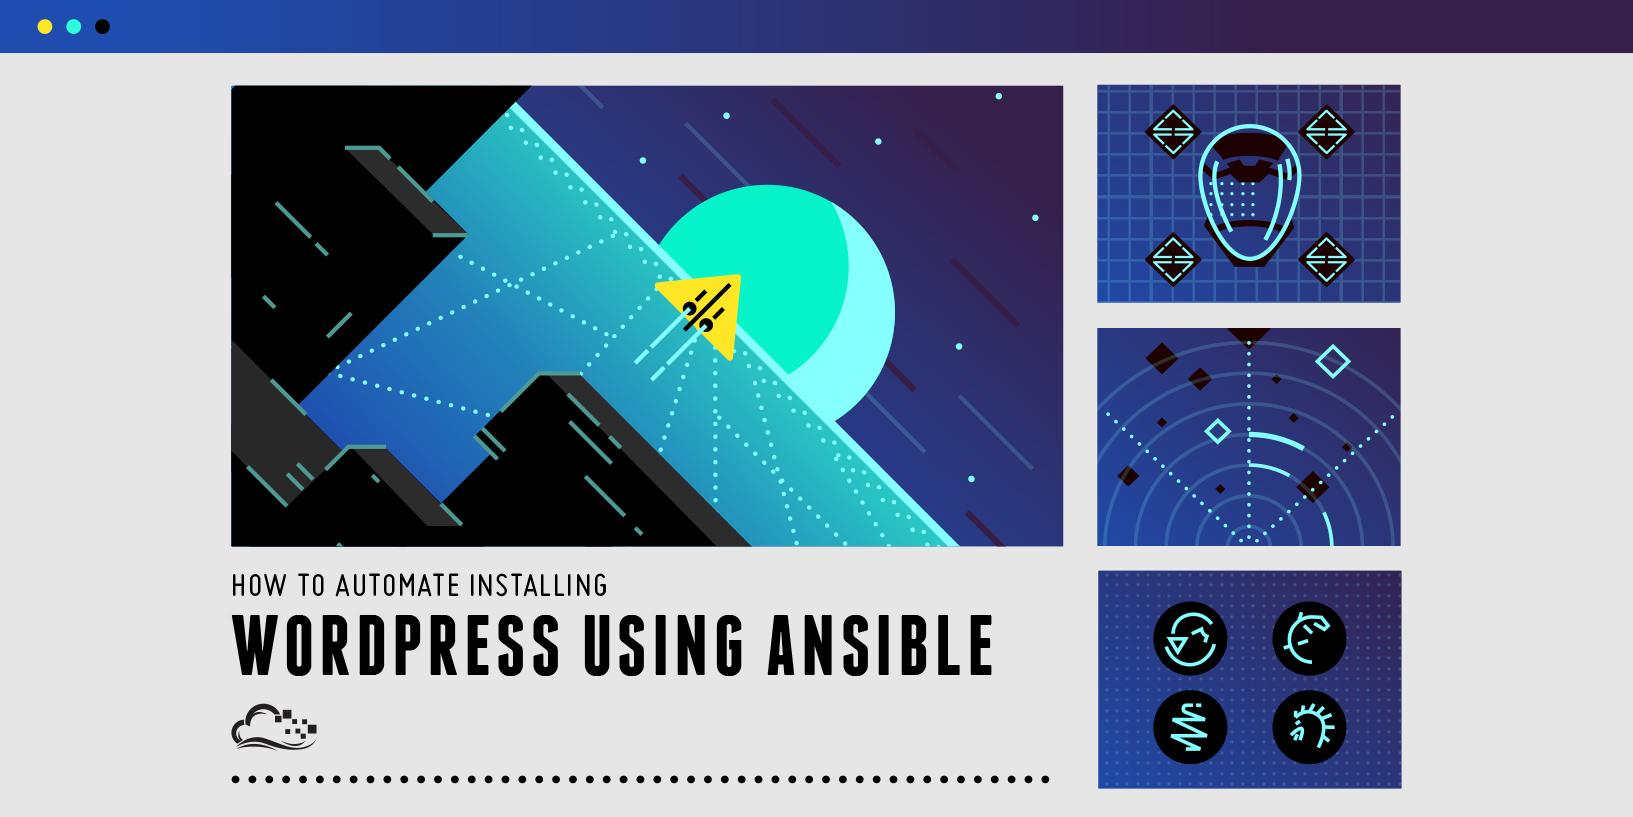 How To Automate Installing WordPress on Ubuntu 14.04 Using Ansible